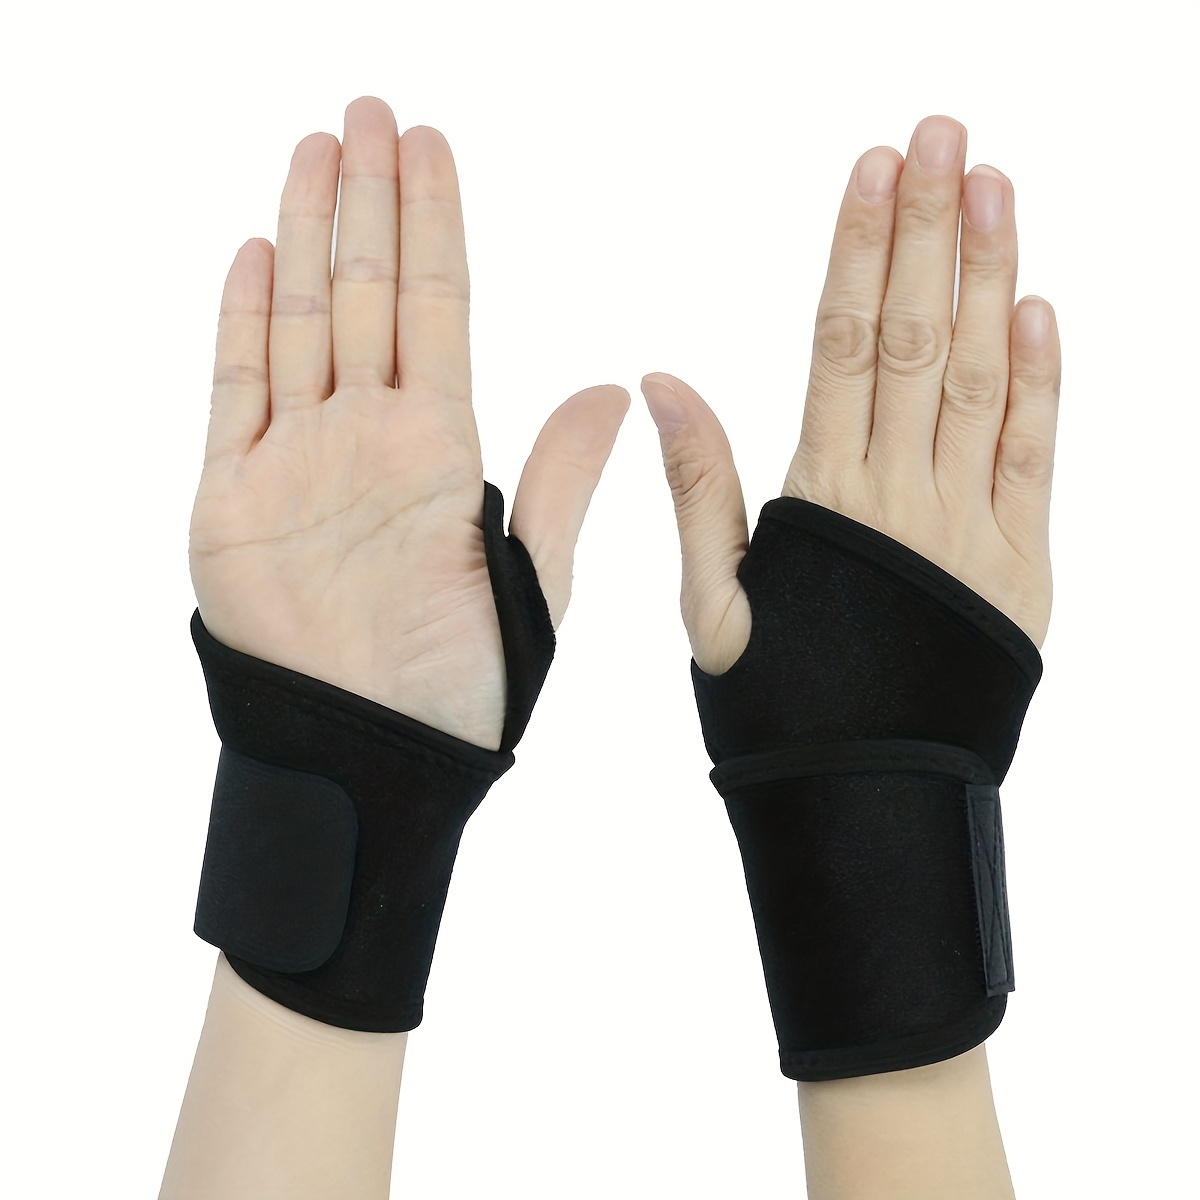 Fiber Lymphvity Detoxification Repair Shaping Wrist Strap - Temu